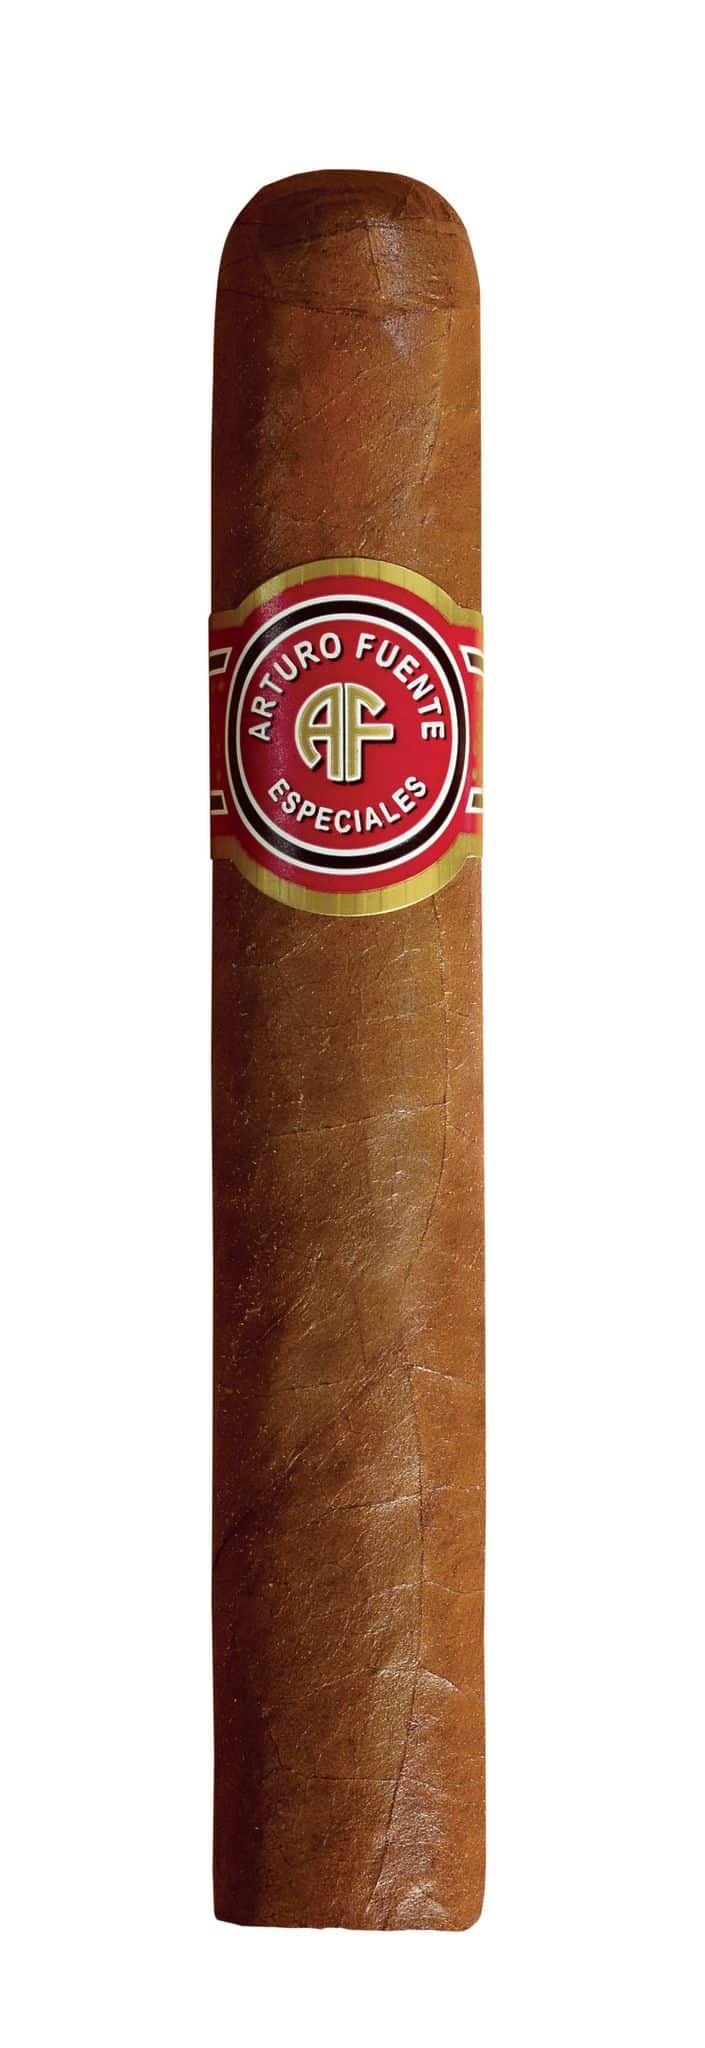 Single Arturo Fuente Especiales Conquistadores cigars